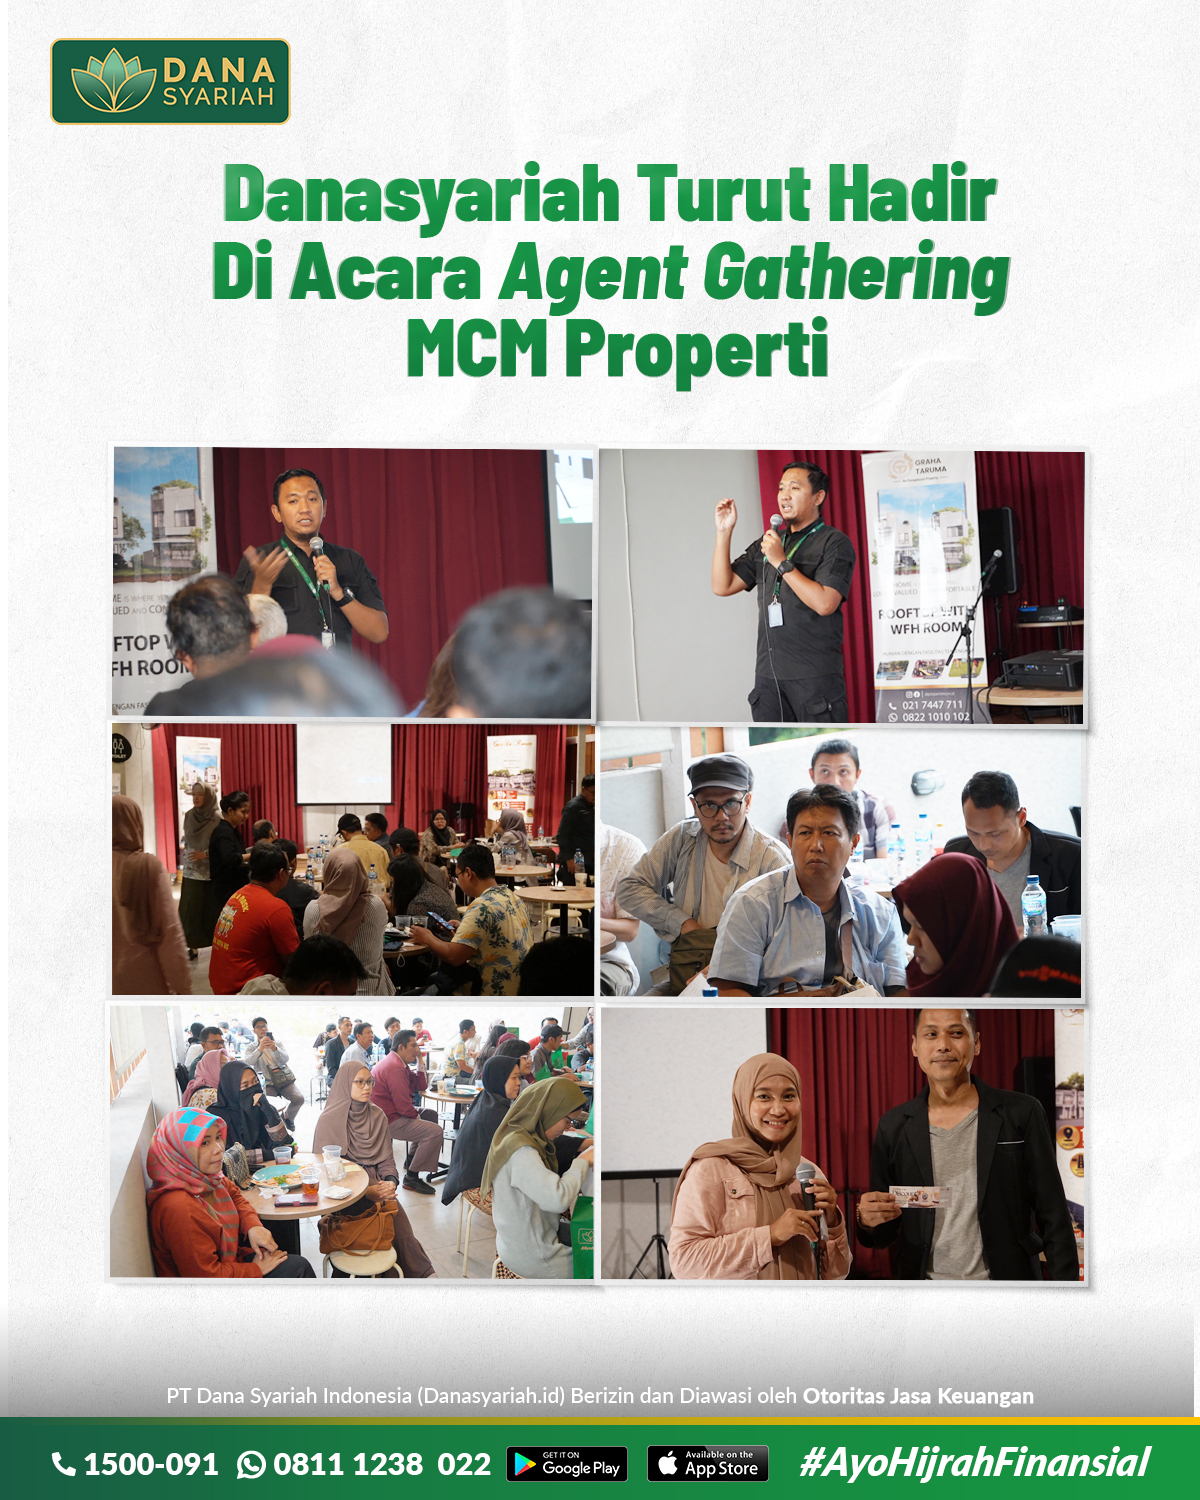 Dana Syariah Danasyariah Turut Hadir di acara Agent Gathering MCM Properti